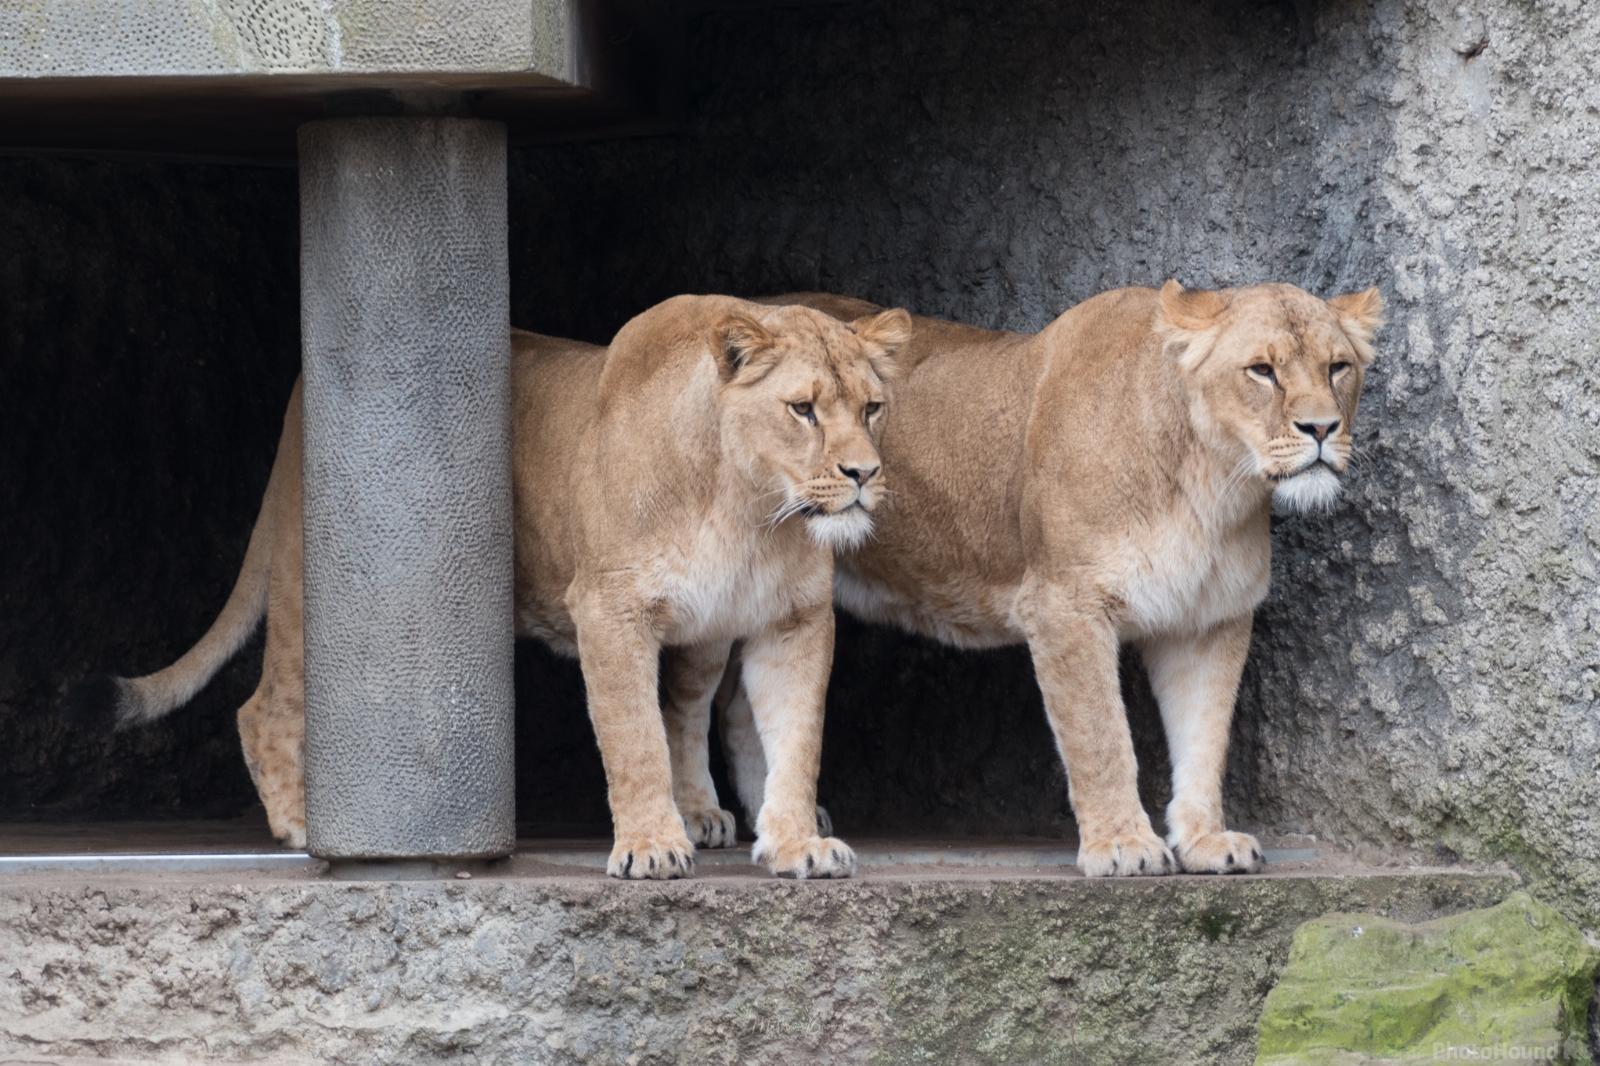 Image of Artis Royal Zoo by Mathew Browne